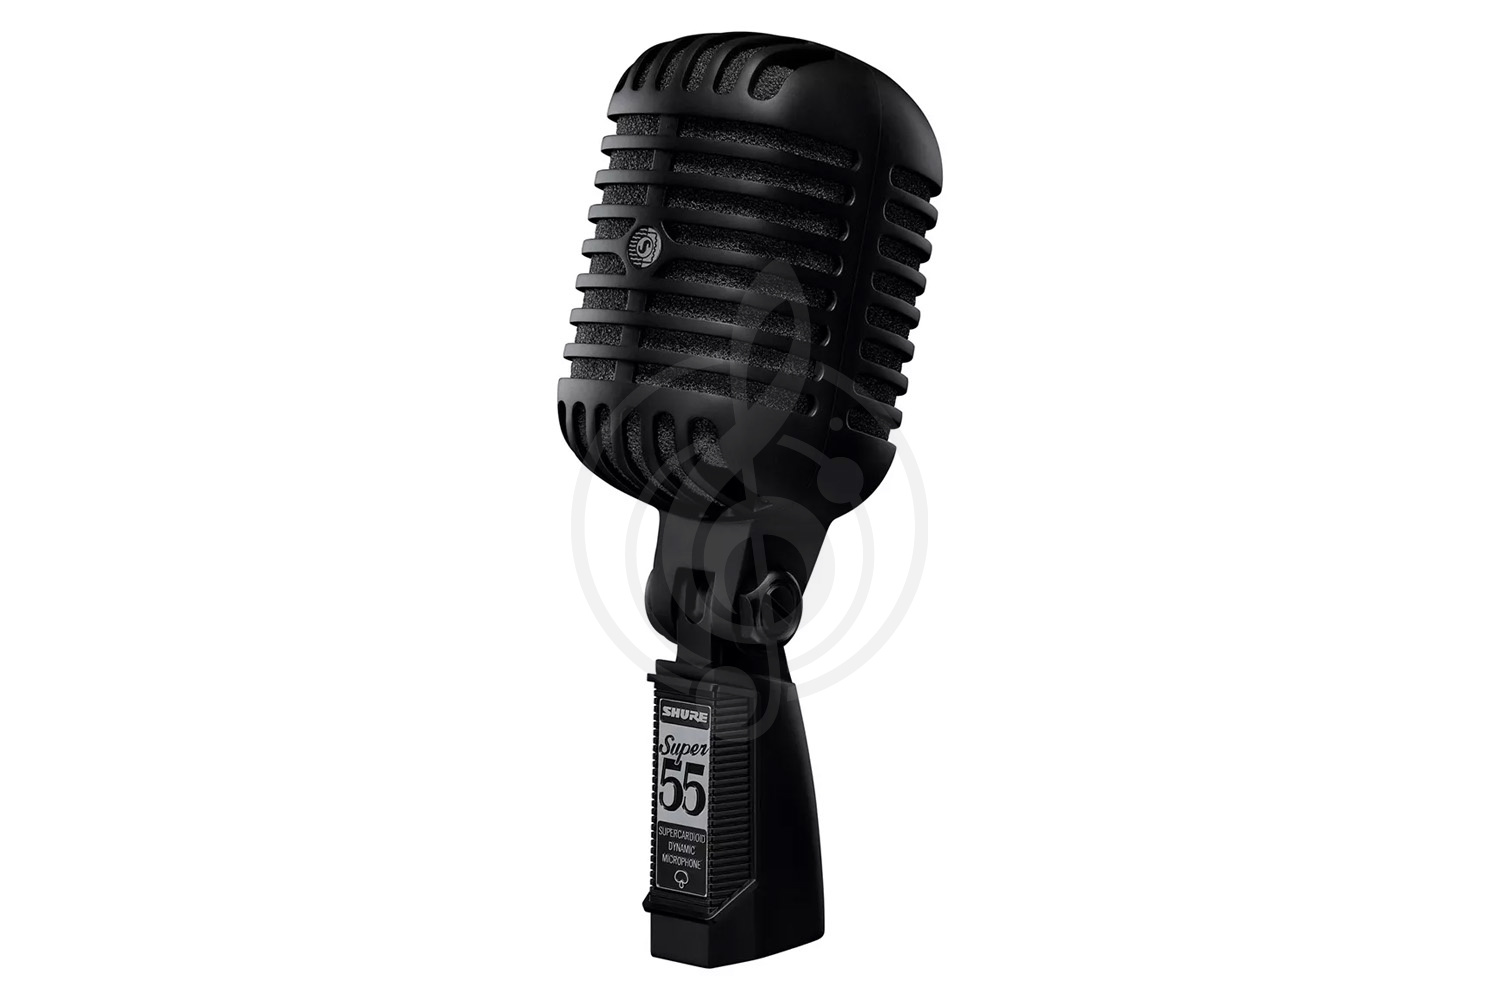 Динамический вокальный микрофон Динамические вокальные микрофоны Shure SHURE SUPER 55 Deluxe Pitch Black Edition - динамический вокальный микрофон SUPER 55 Deluxe Pitch Black Edition - фото 1